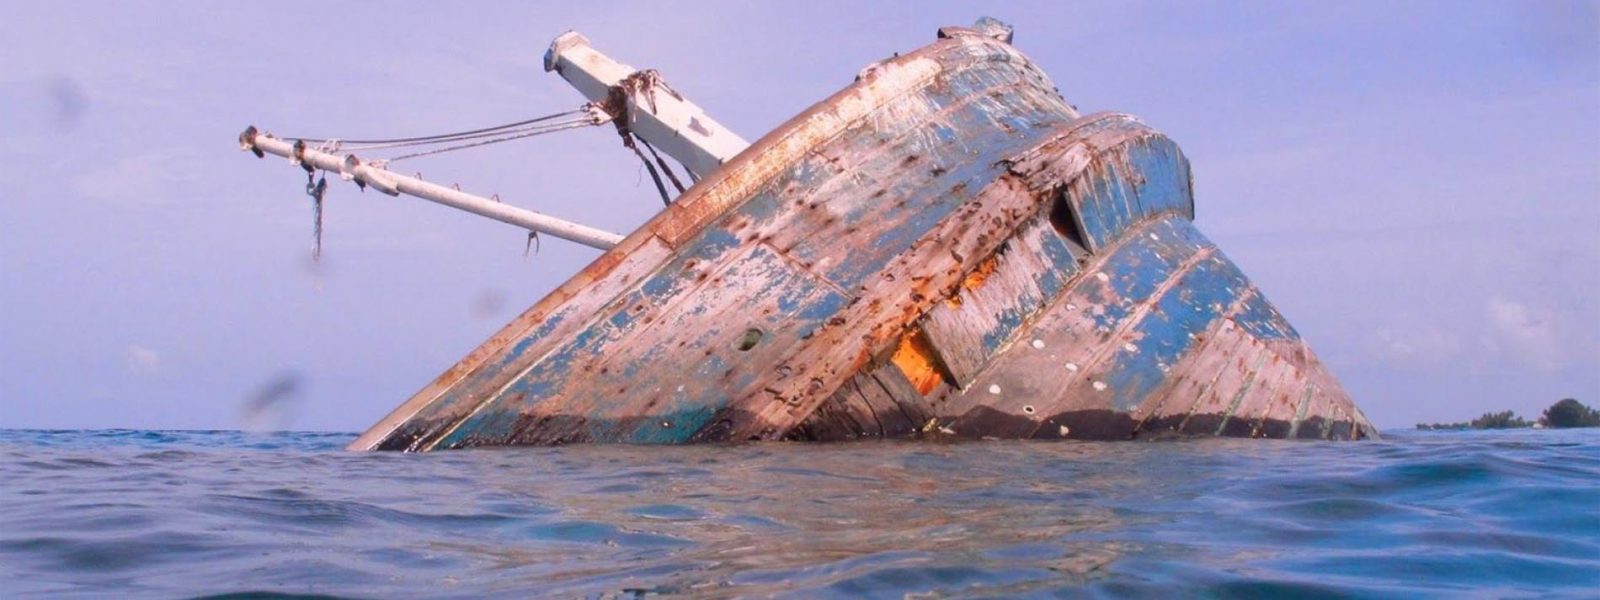 Vaavu Atoll Shipwreck Maldives